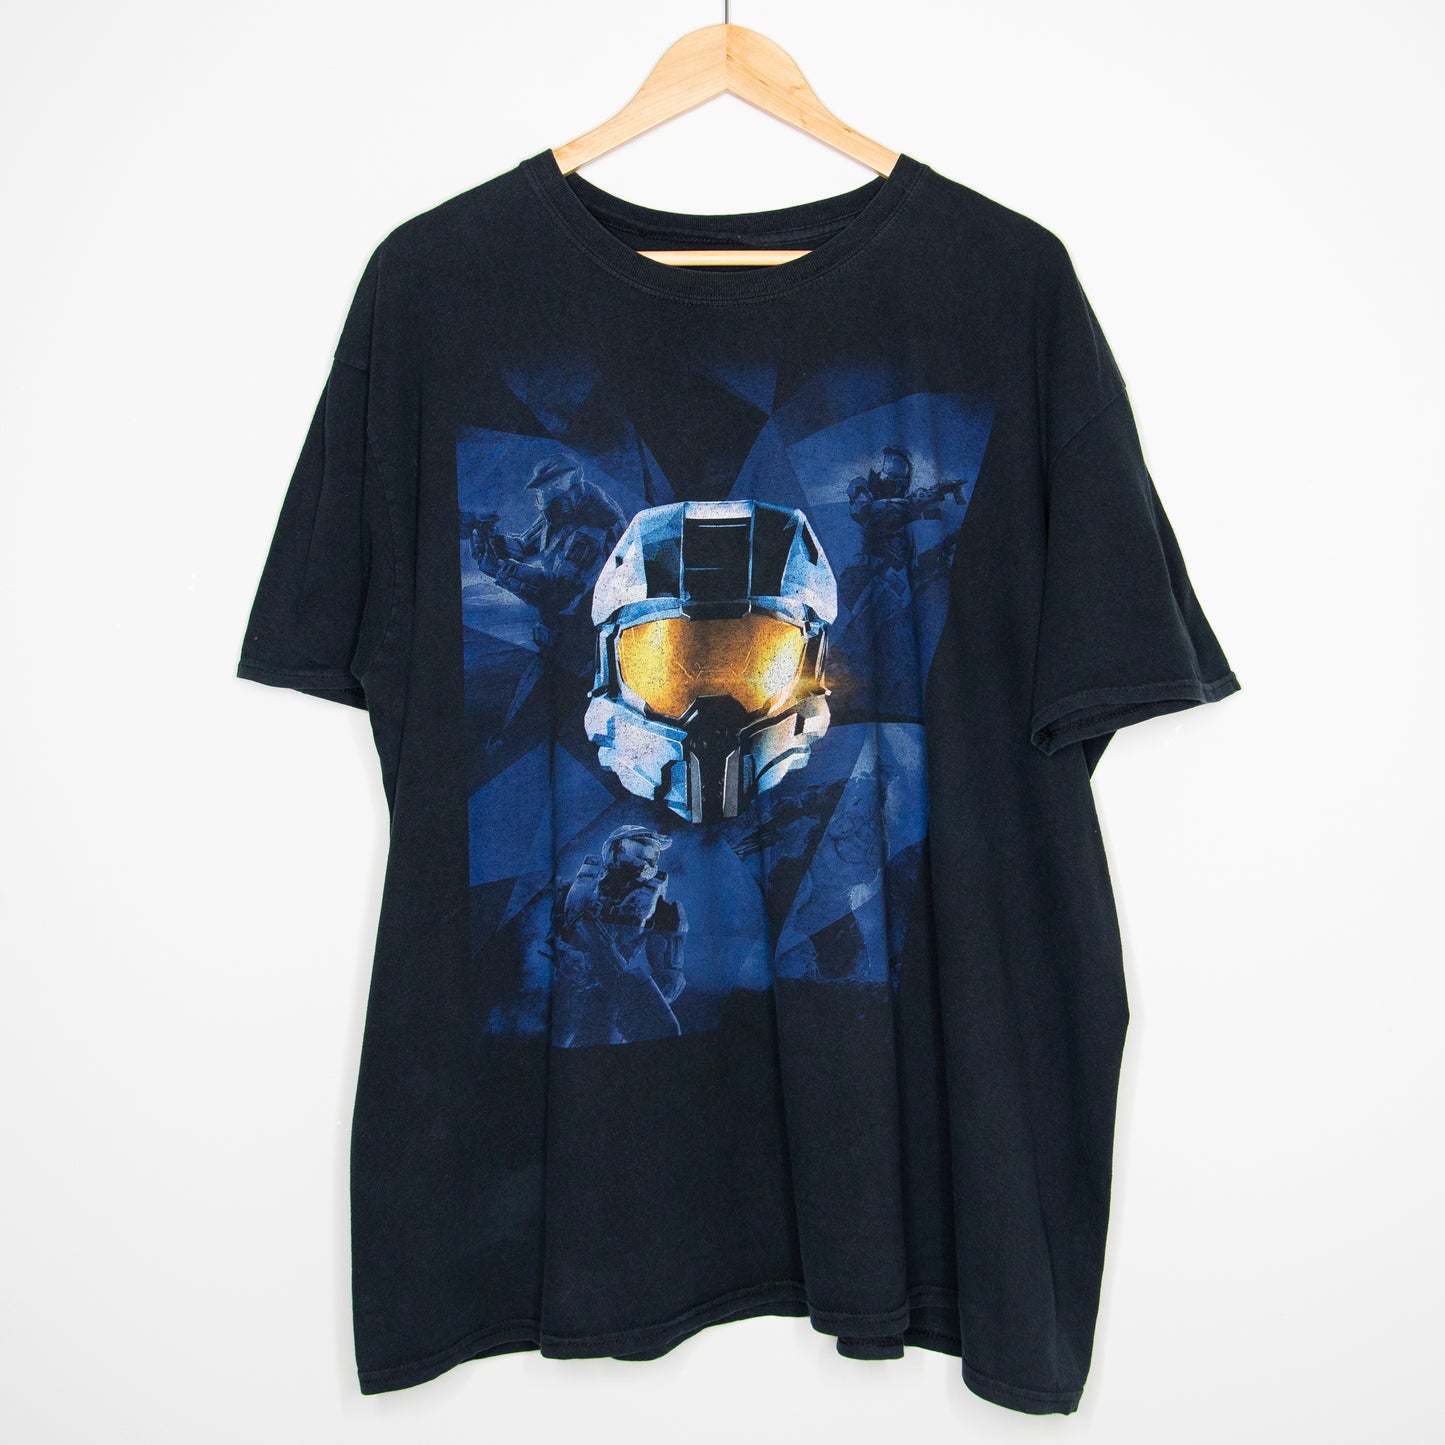 2014 Halo Nightfall T-Shirt XL